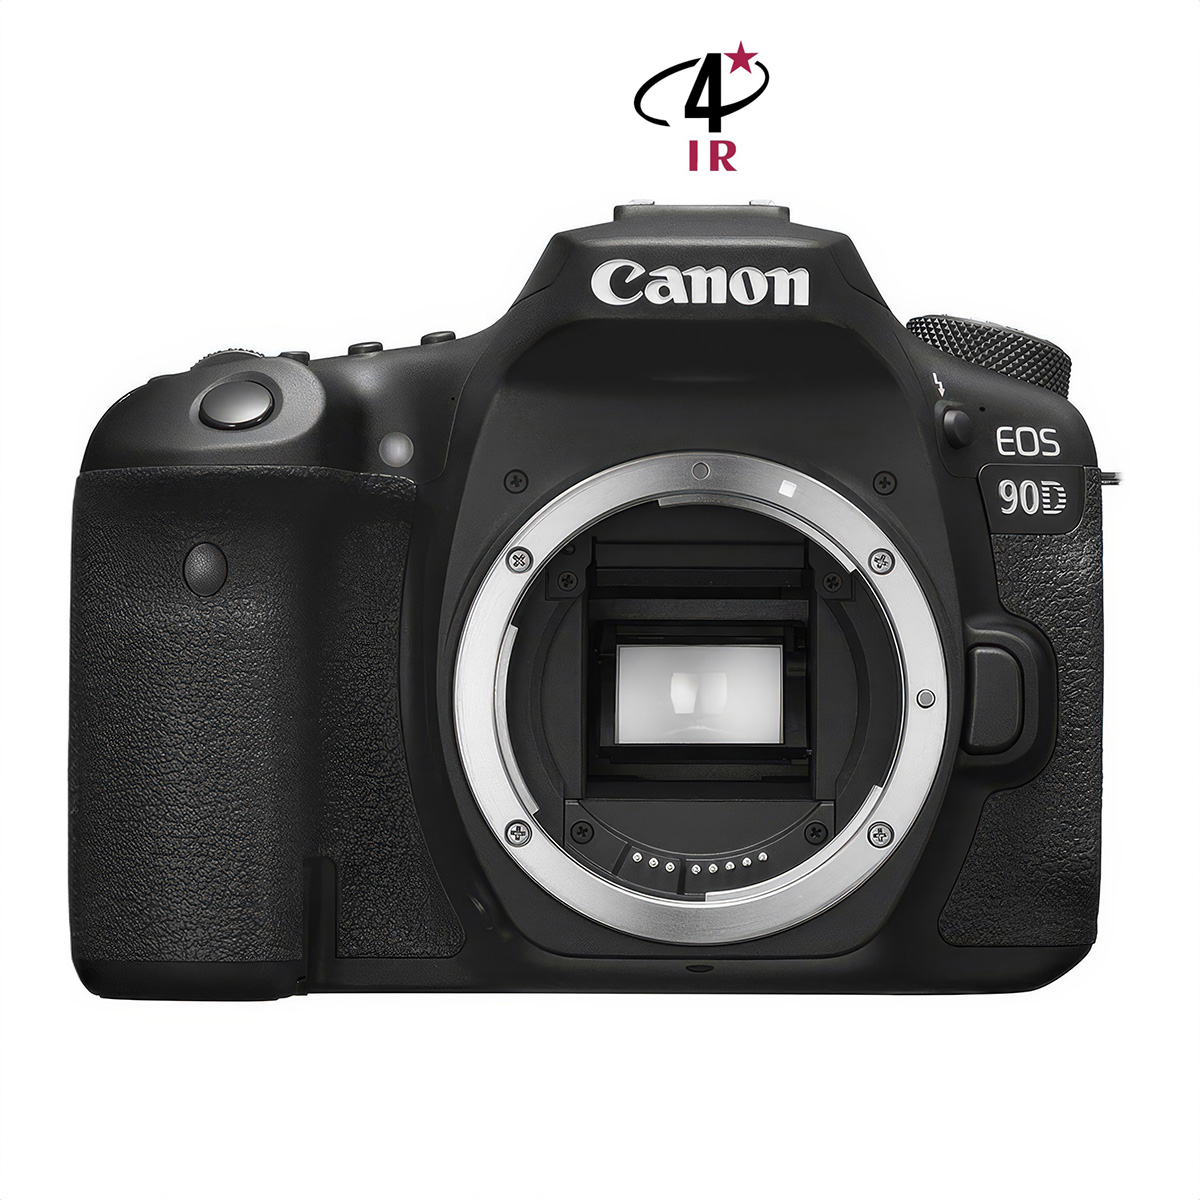 Reflex Canon EOS 90D neuf défiltré + refiltré 4'IR New 4'IR Cameras